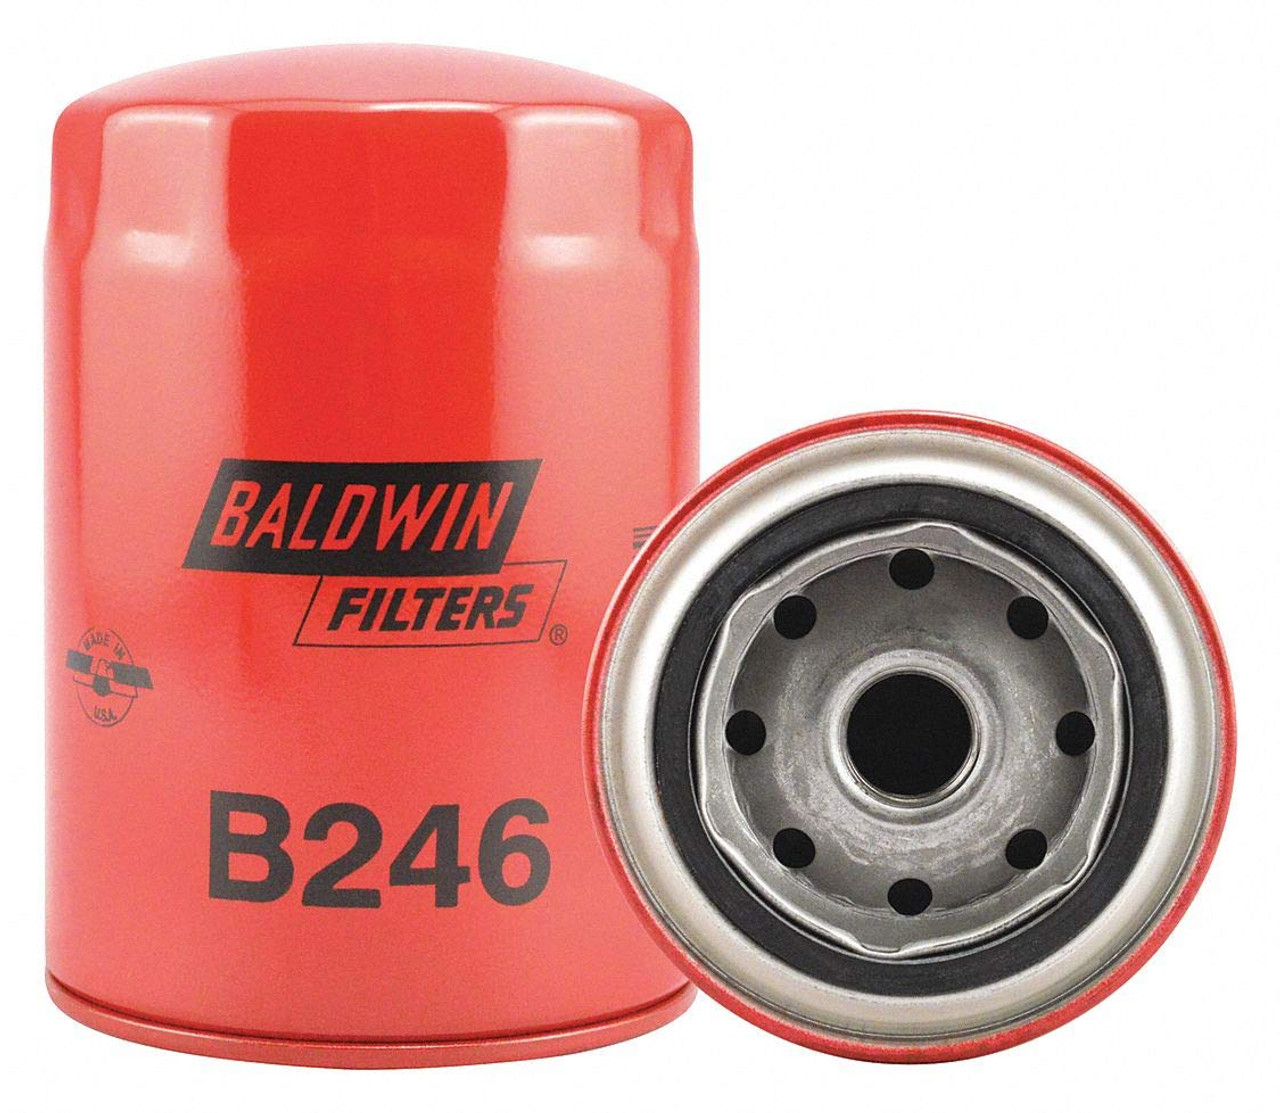 Baldwin B246 Lube Spin-on